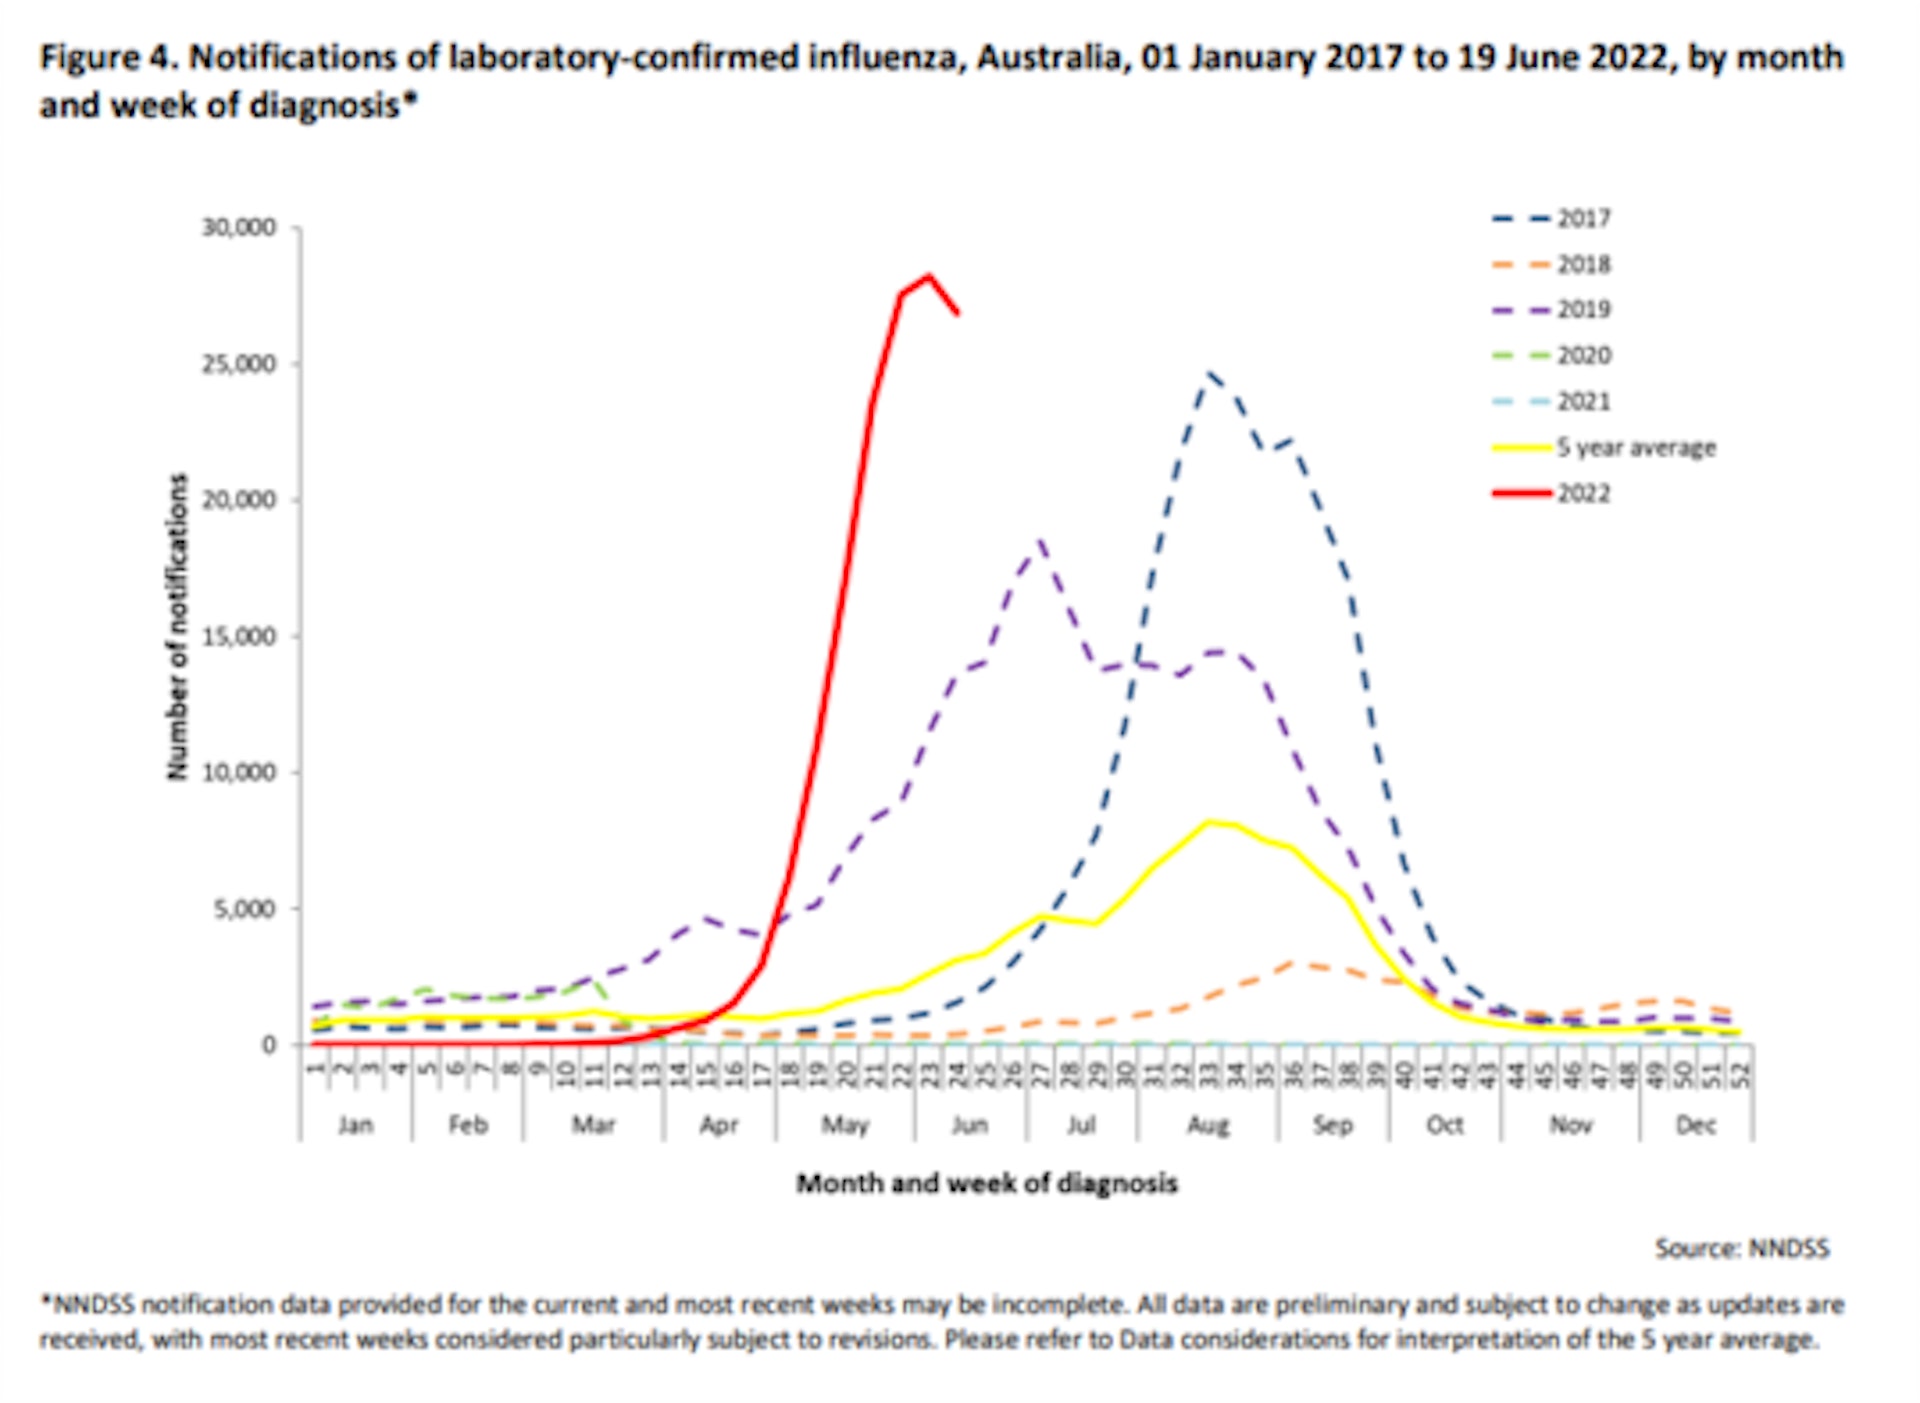 澳洲流感情況，每週新增個案超越過去五年平均水平。（資料來源：Australian Government Department of Health）